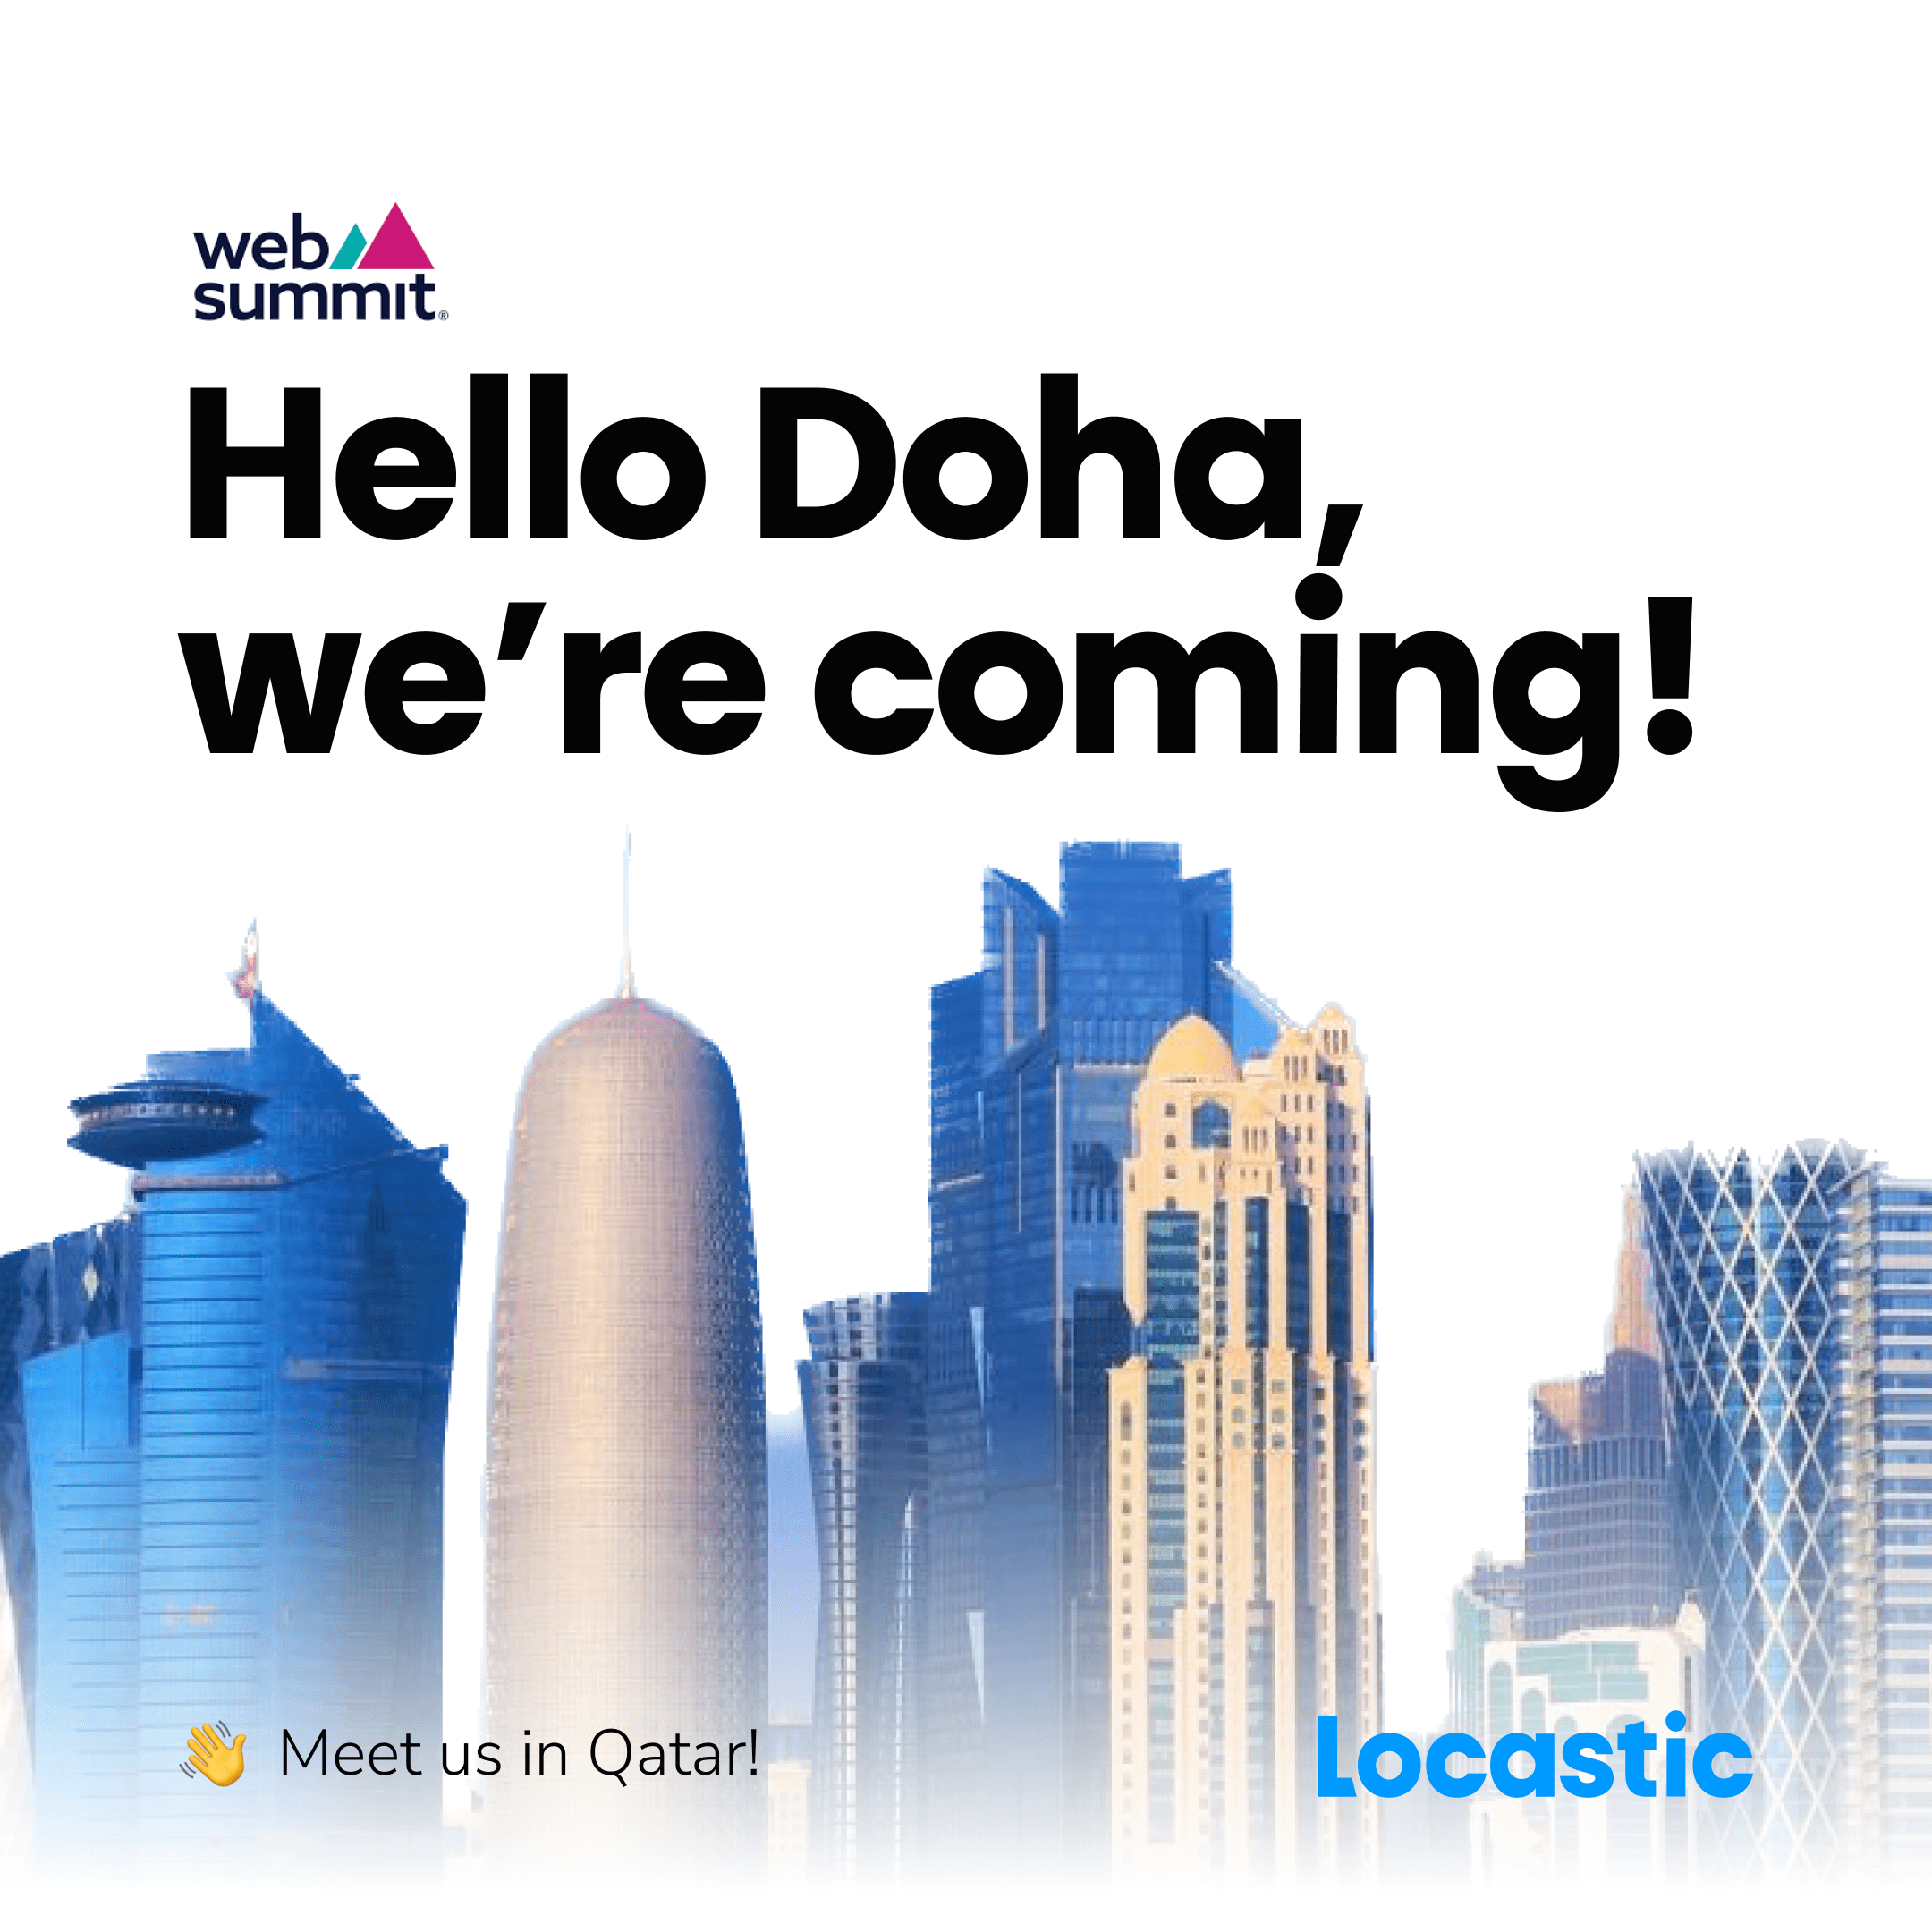 <p>Meet us in Qatar!</p>
